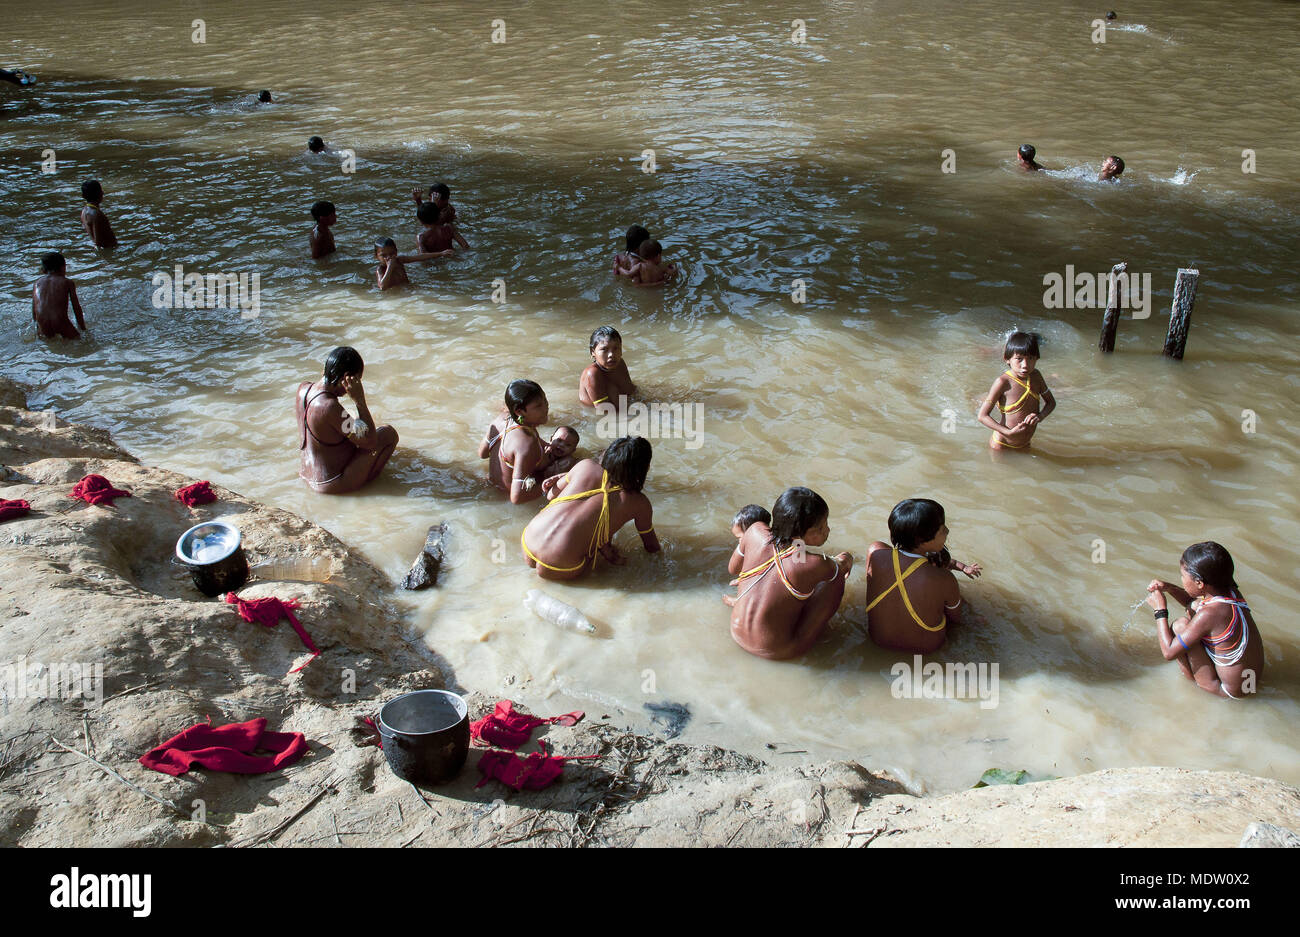 Kinder und Frauen ethnischer kollektive Yanomami, Bad im Fluss Toototobi - toototobi Gemeinschaft Stockfoto